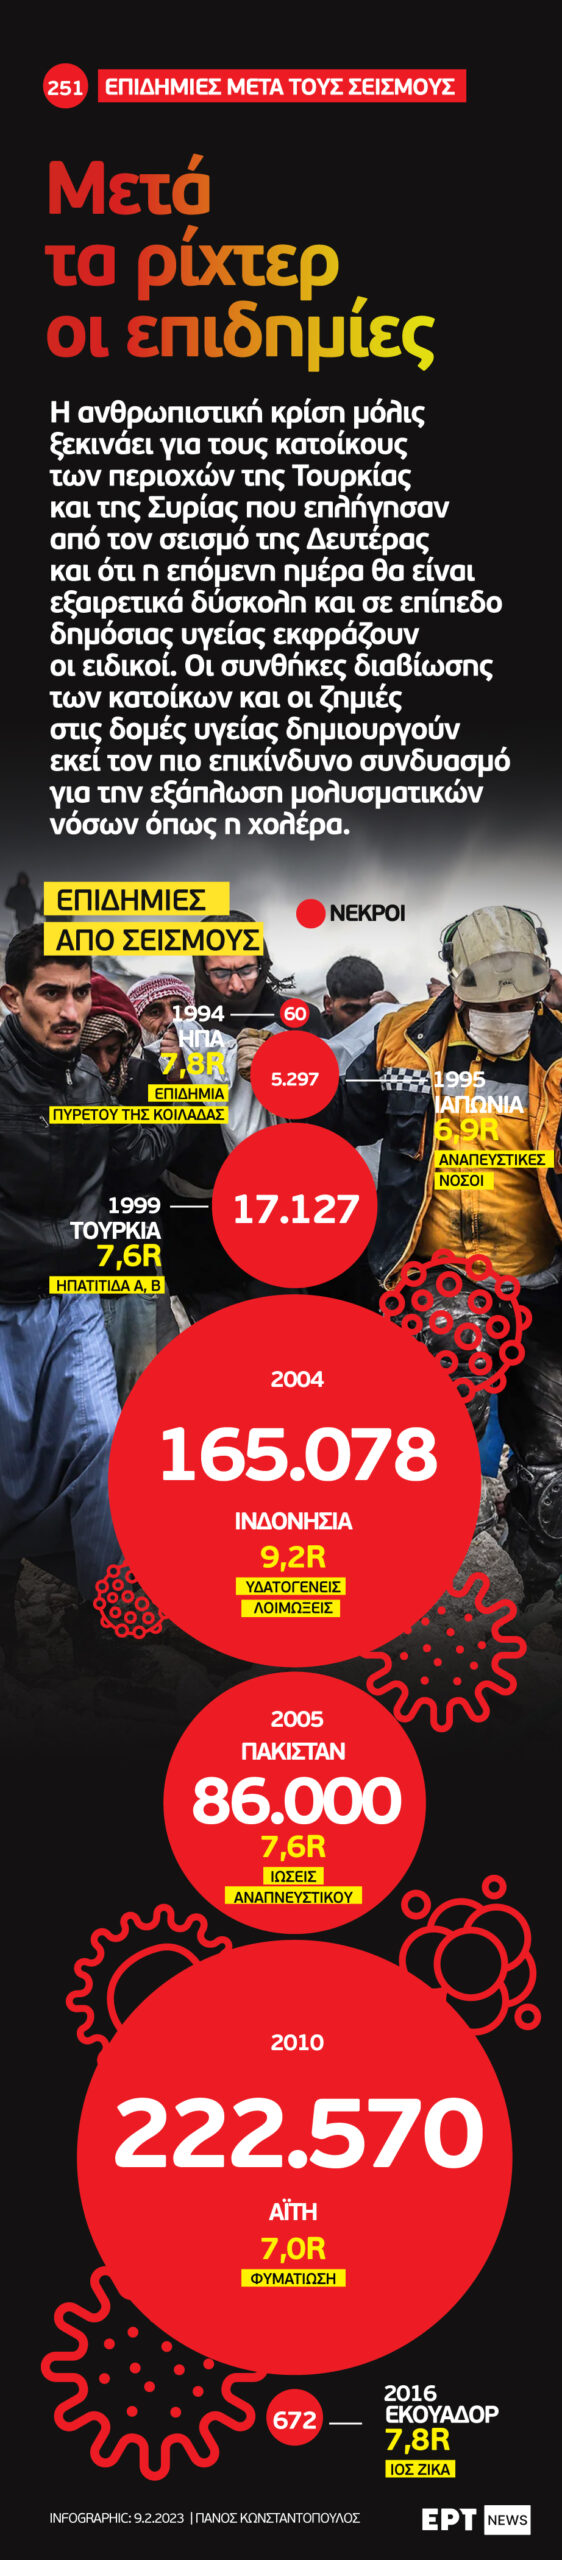 Infographic: Μετά τα ρίχτερ οι επιδημίες